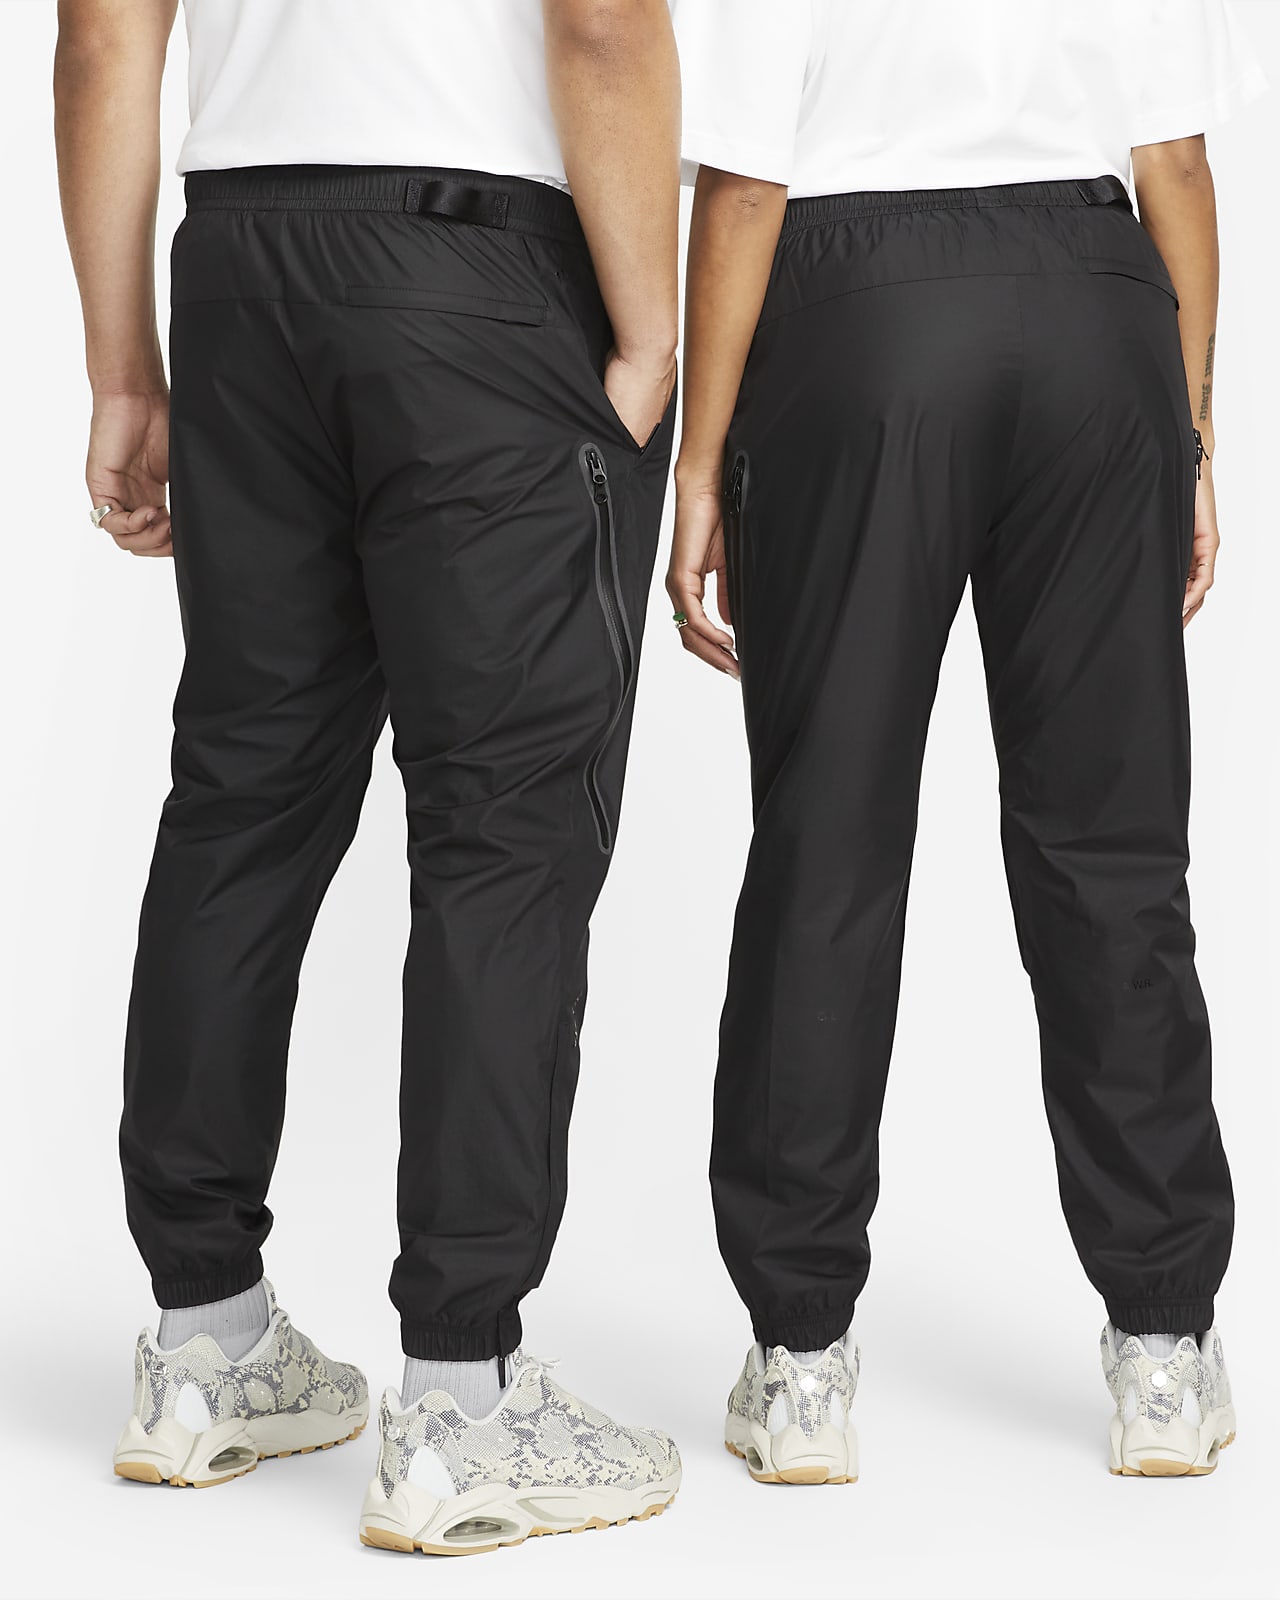 Mサイズ NOCTA x Nike Track Pants Black 新品メンズ